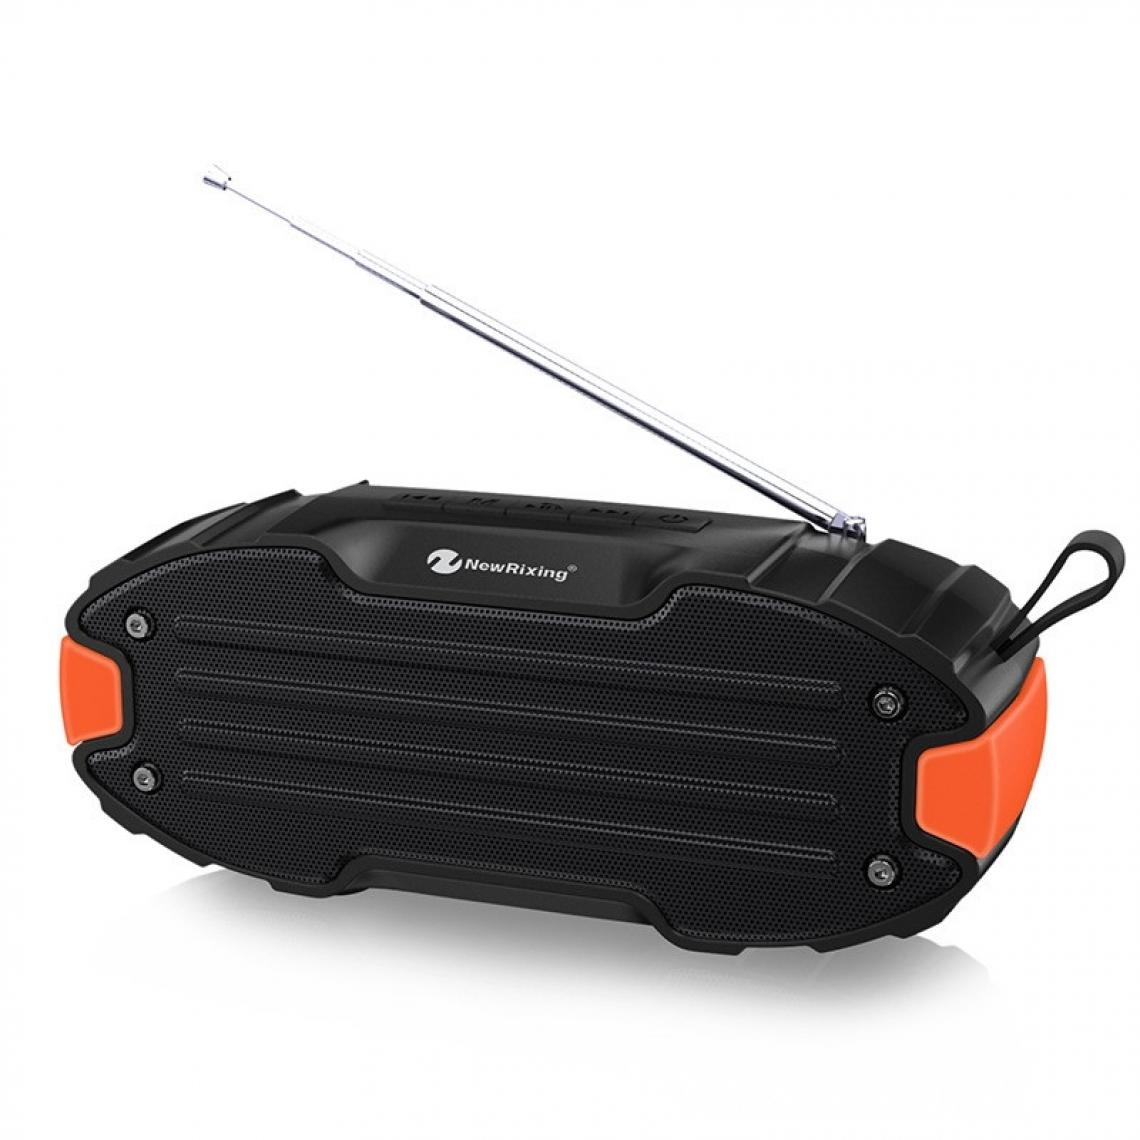 Wewoo - Enceinte Bluetooth NR907 Haut-parleur stéréo portable avec barre de son surround microphonecarte Micro SD de soutien FM Orange - Enceintes Hifi